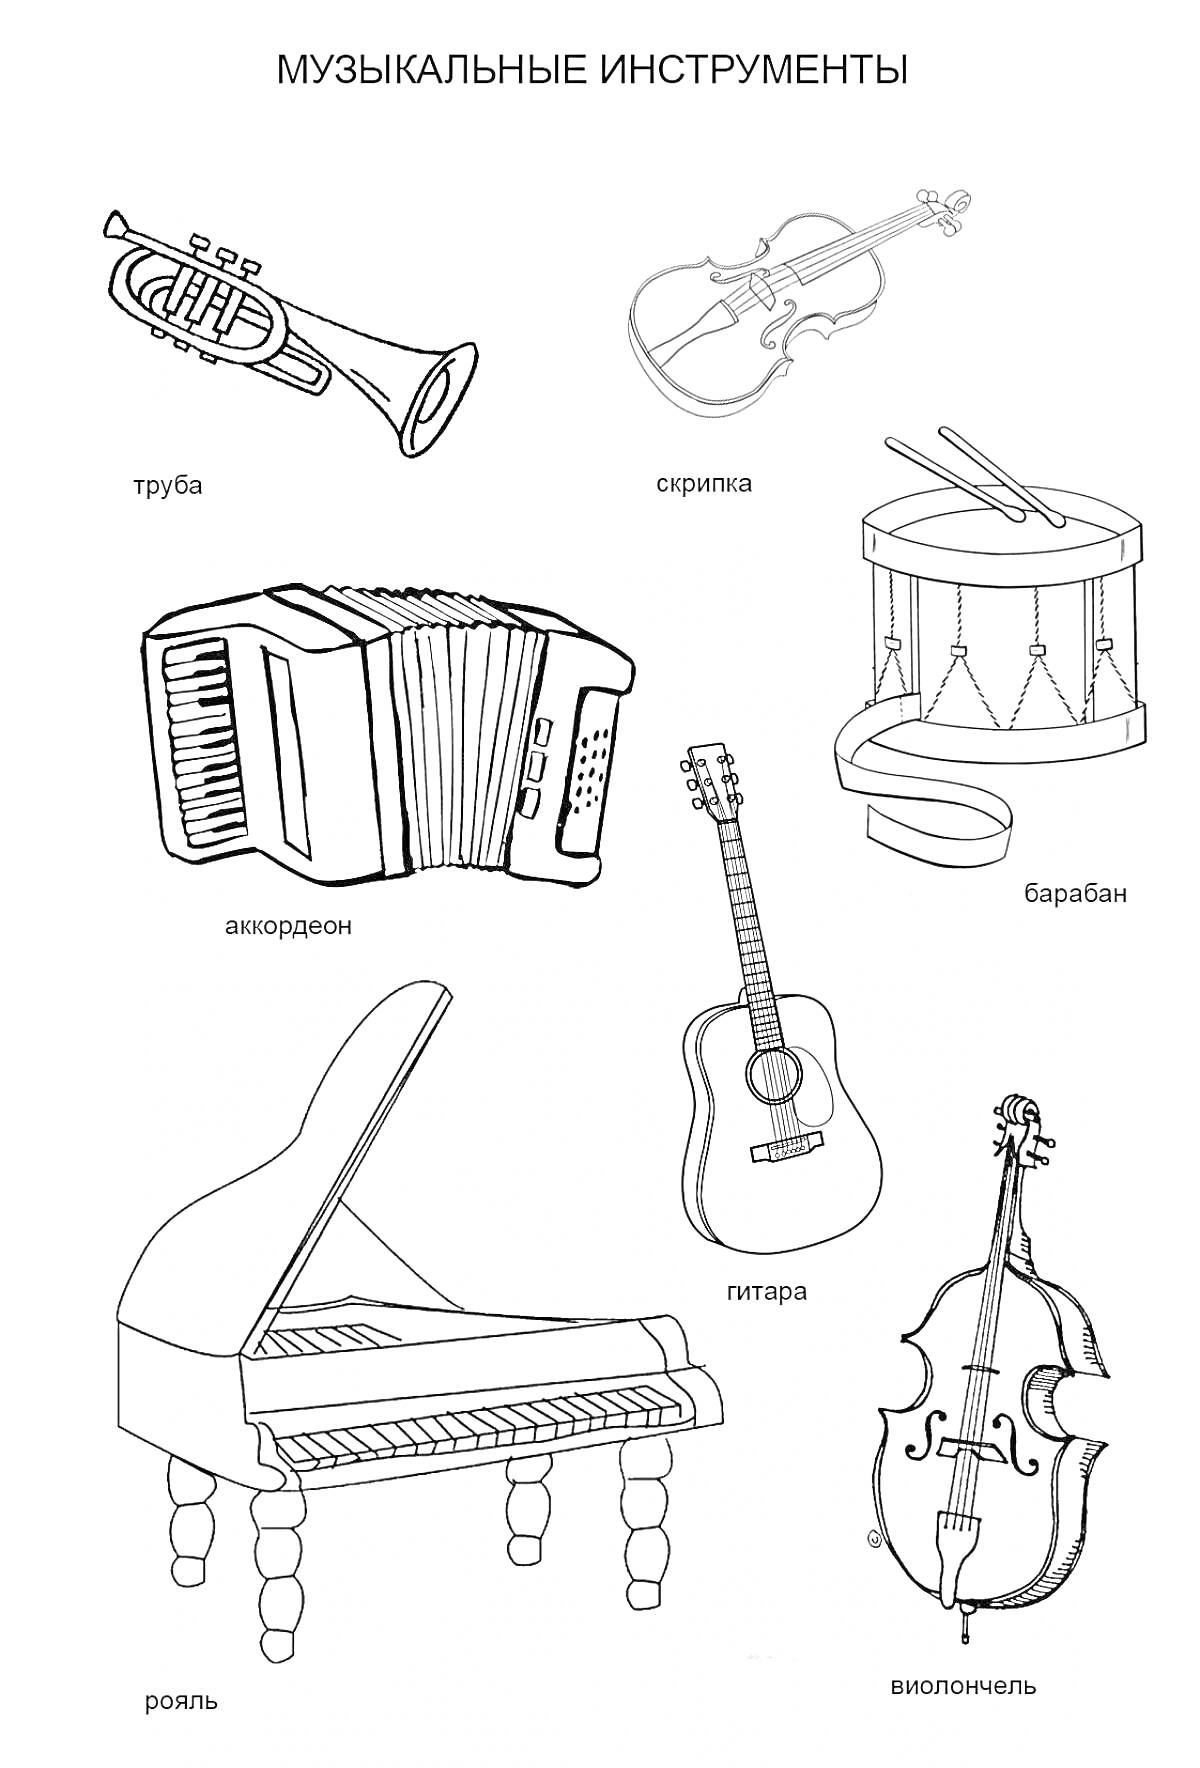 Музыкальные инструменты - труба, скрипка, барабан, аккордеон, гитара, рояль, виолончель